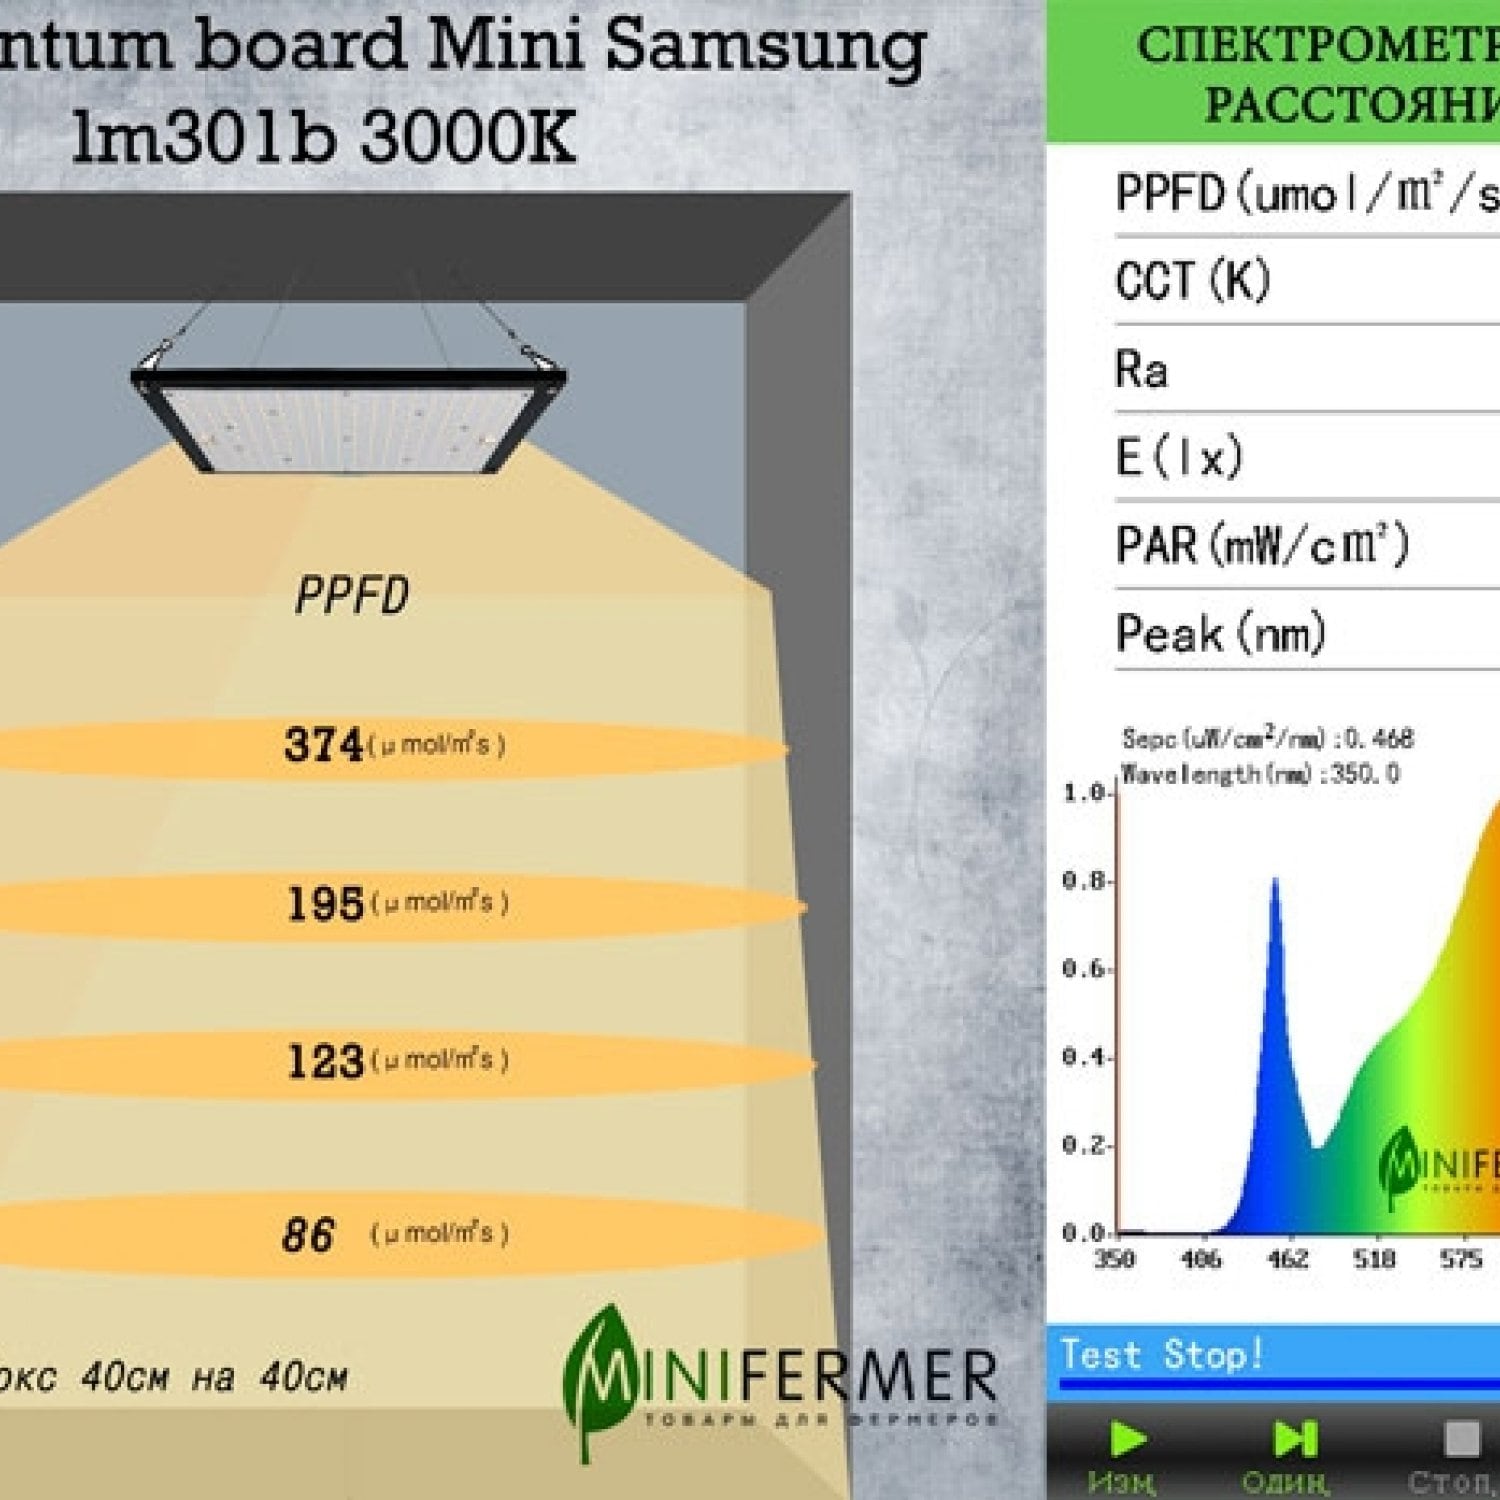 3.4 Quantum board Mini Samsung lm301b 3000K